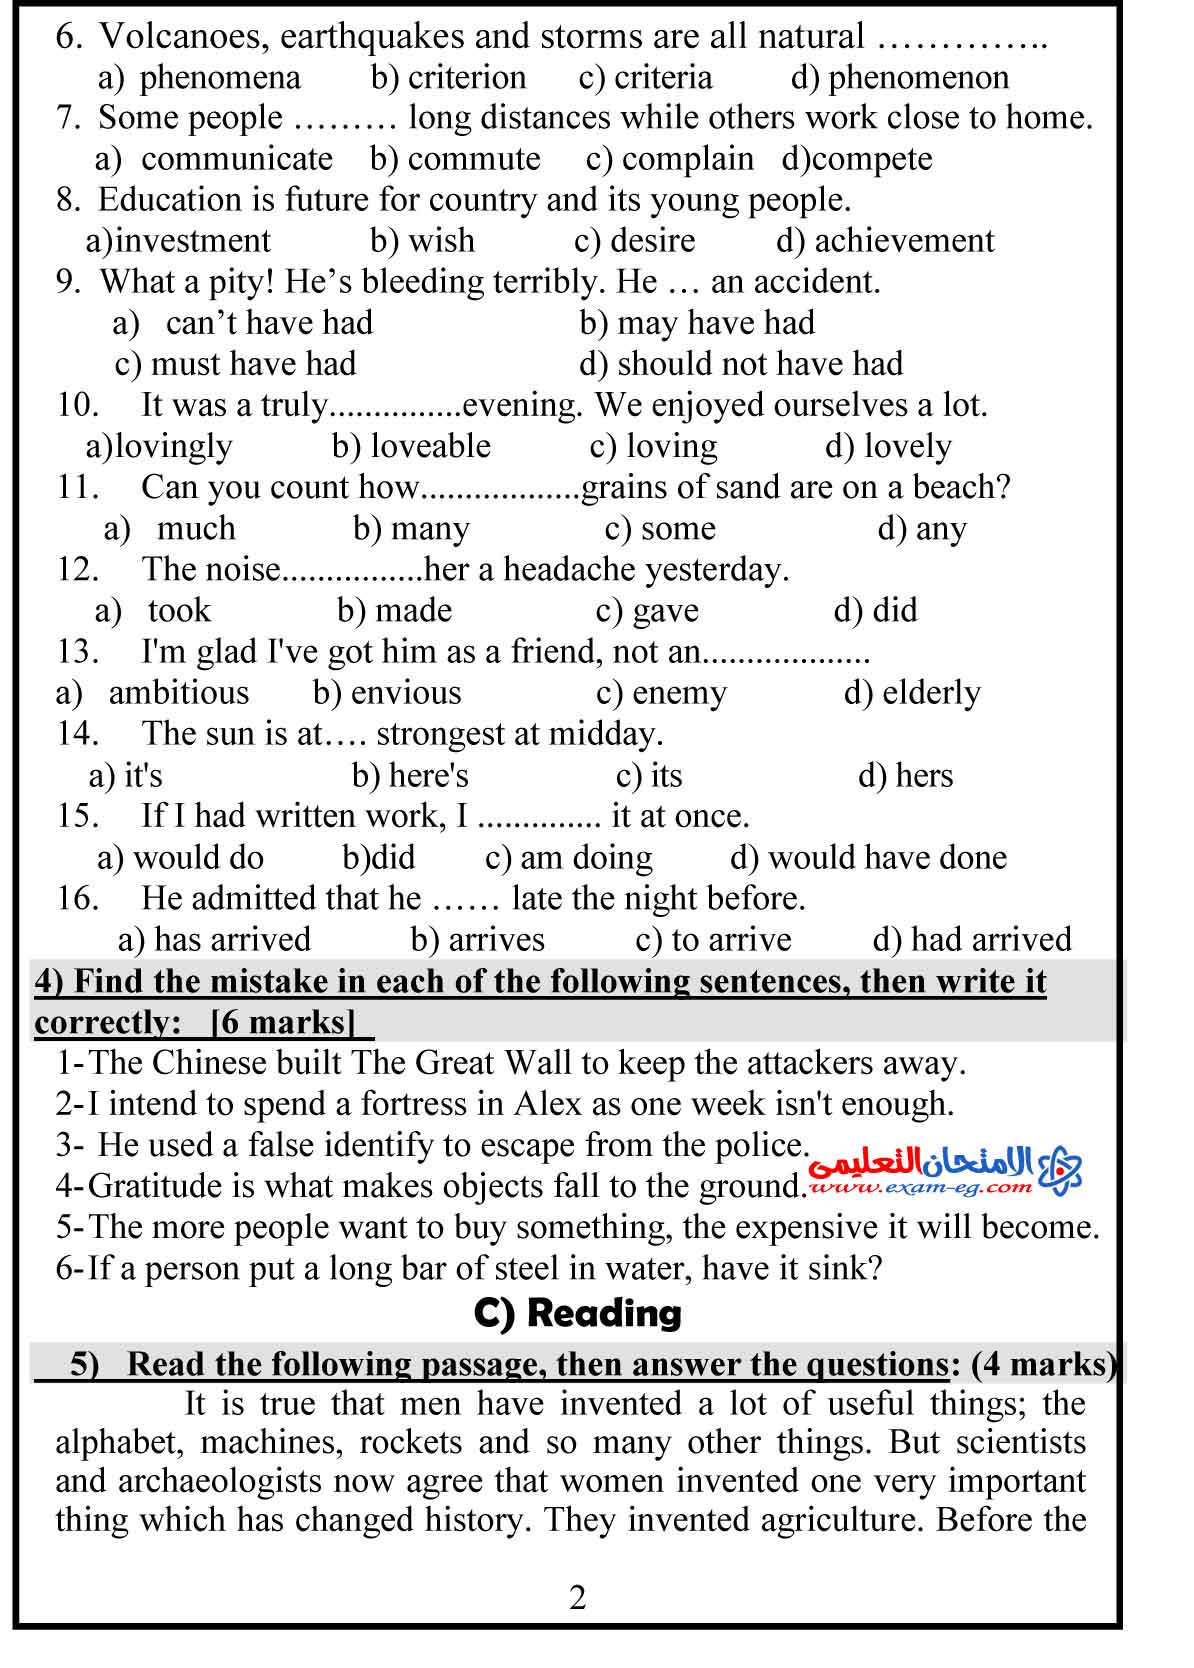 امتحان لغة انجليزية 1 - الامتحان التعليمى-2